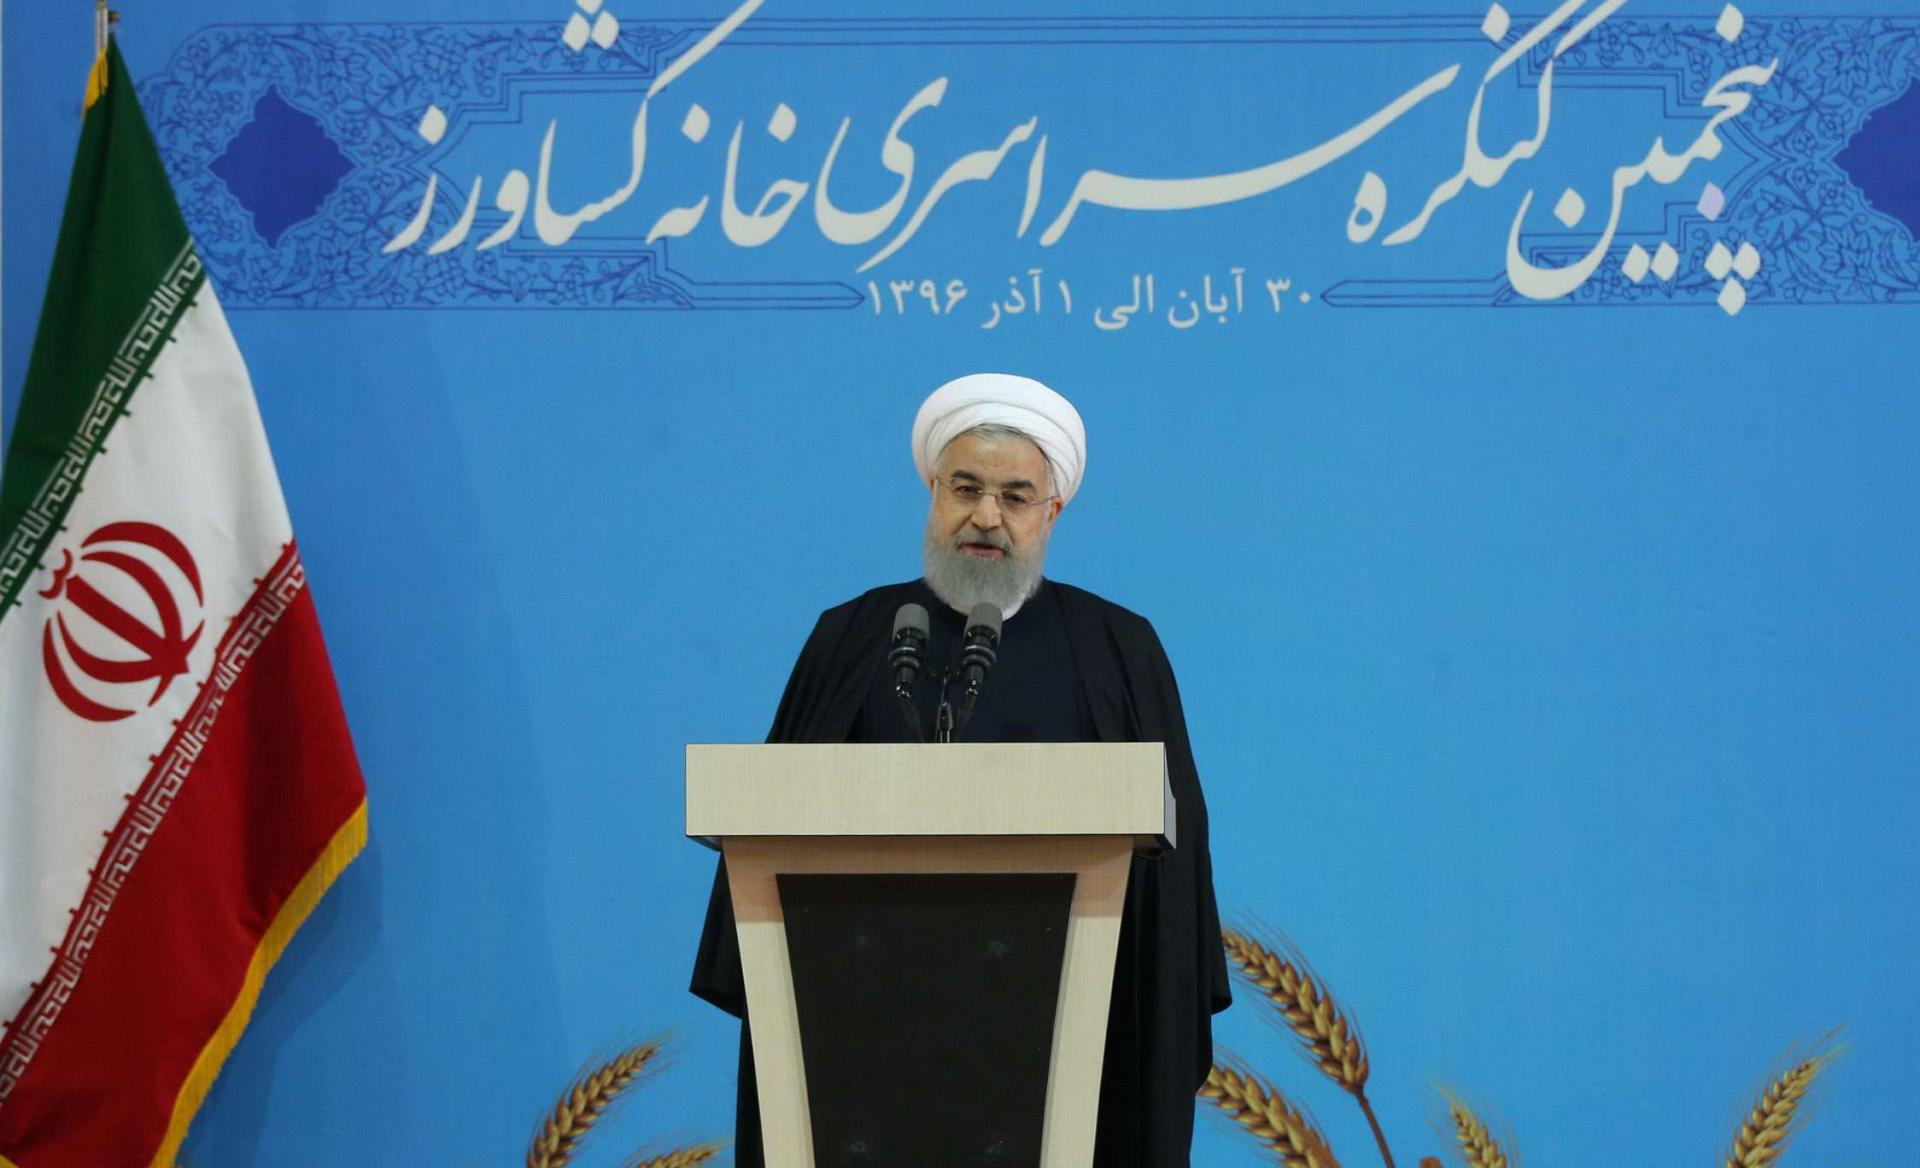 روحاني وعد يتحسين اوضاع الاكراد في بلاده لكنه فشل في ذلك